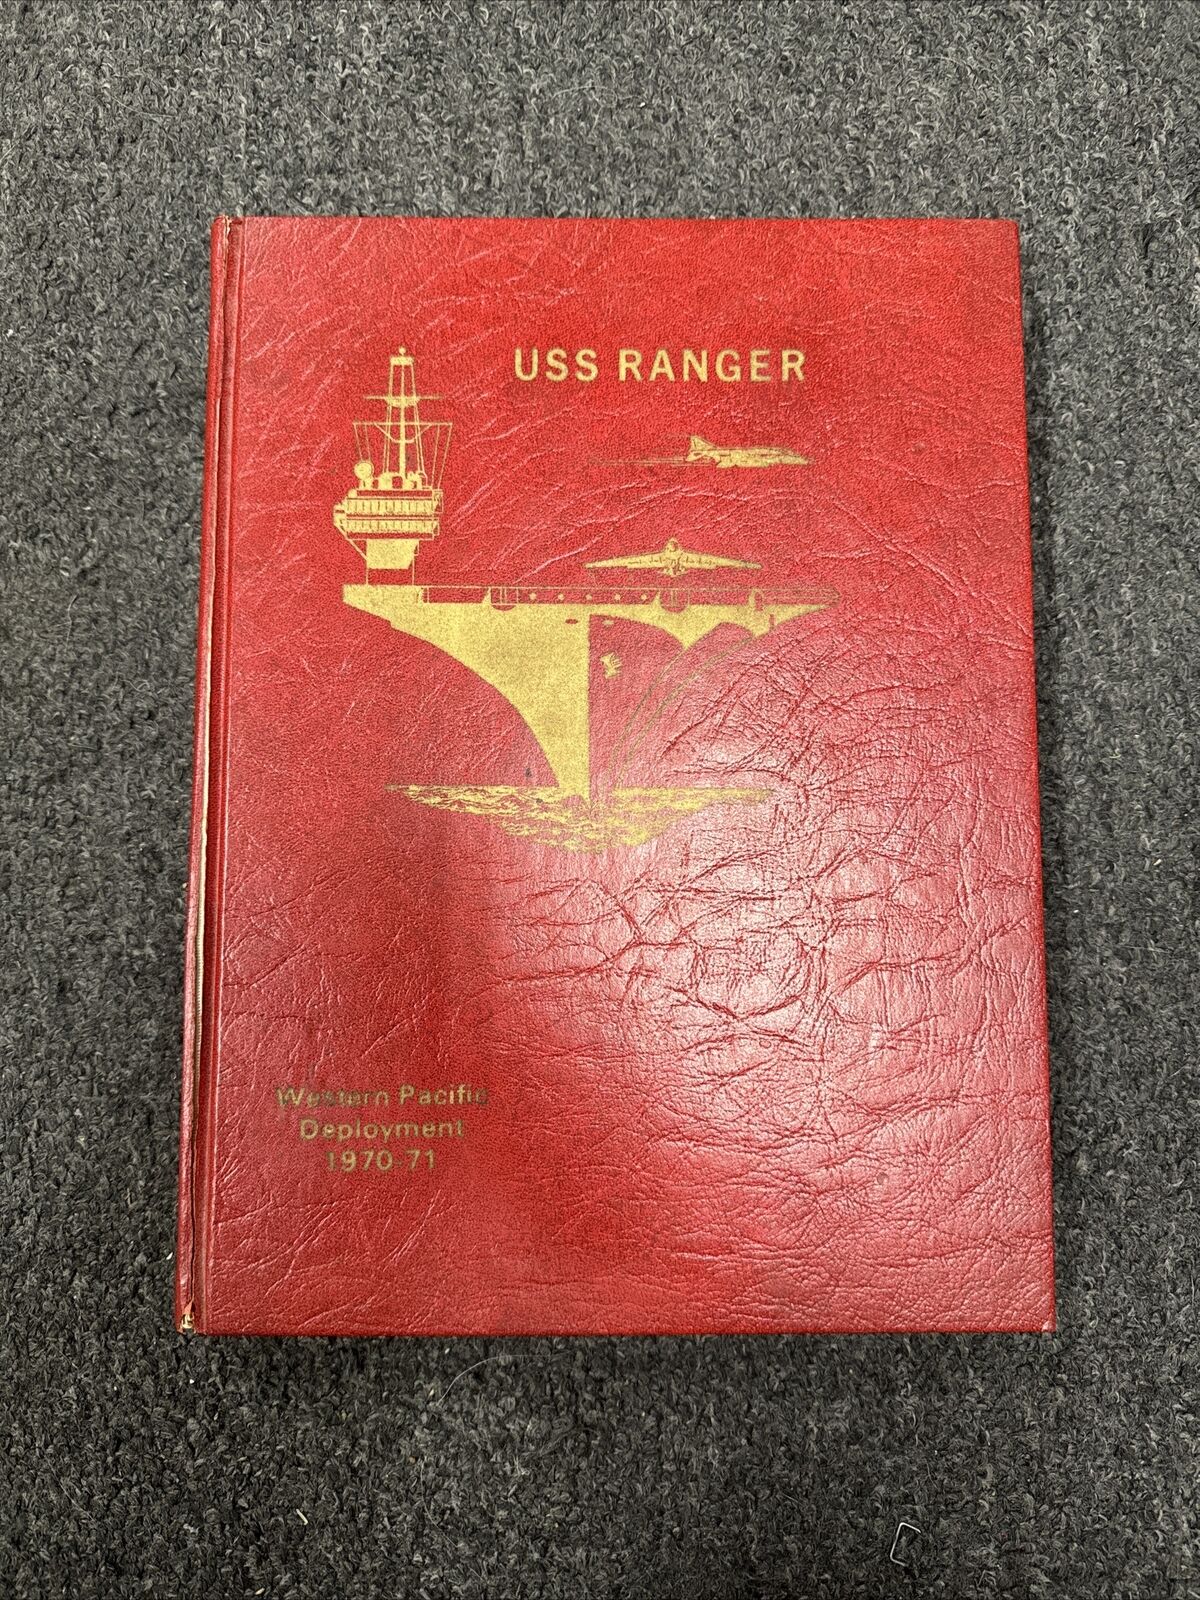 U.S.S. RANGER CVA-61 1970-1971 VIETNAM WESTPAC AIRCRAFT CARRIER CRUISE BOOK